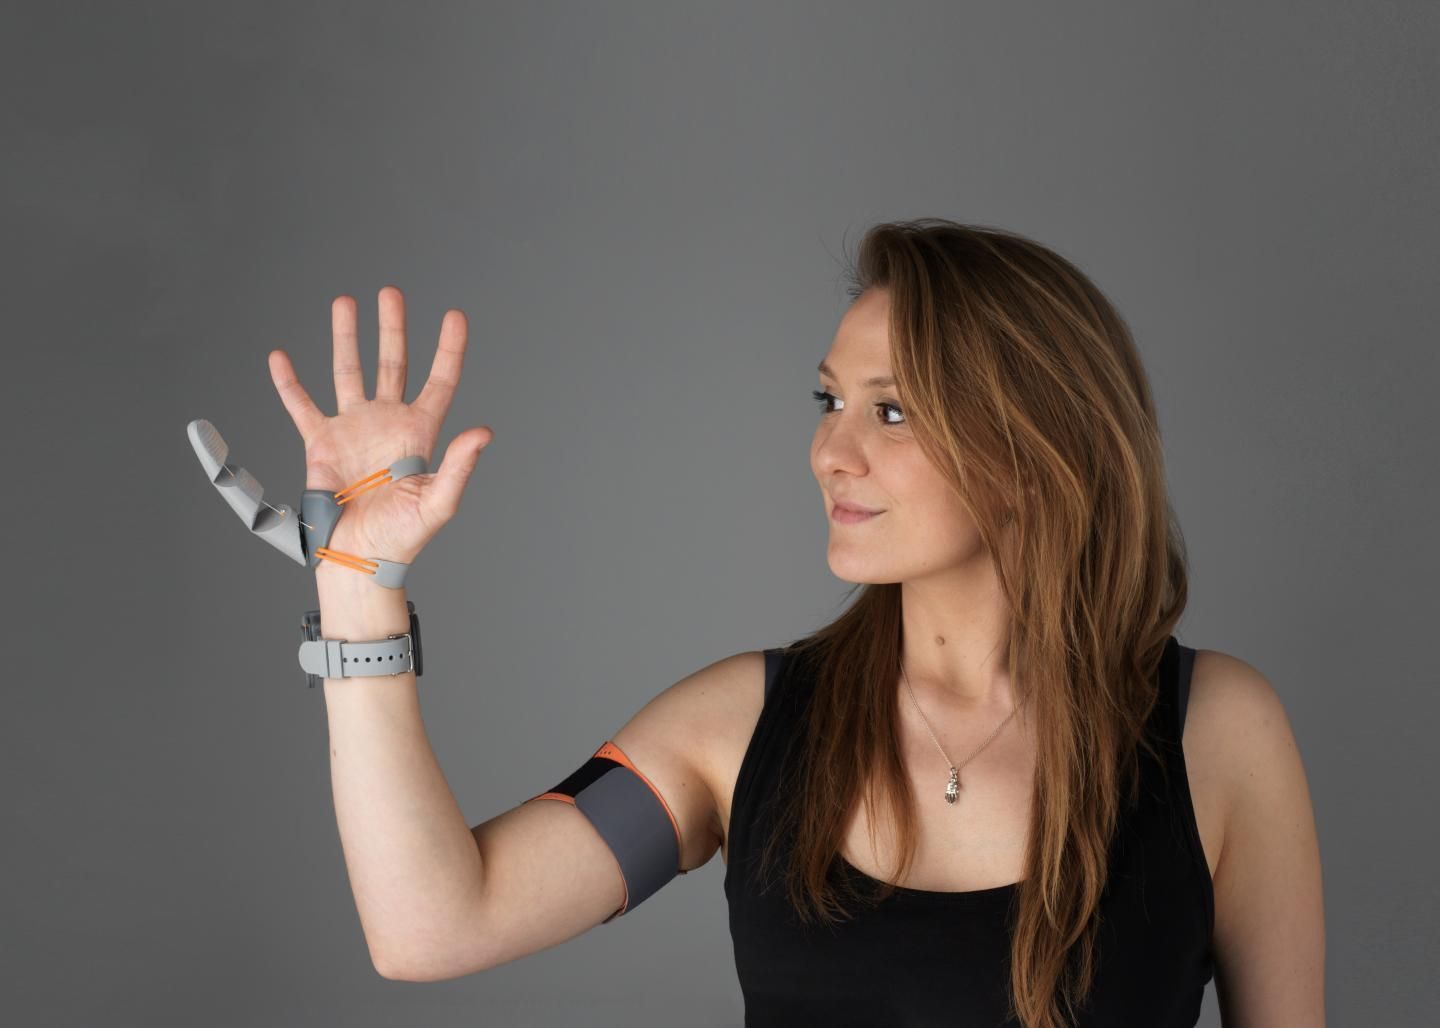 Поява шостого пальця на руці суттєво змінює роботу мозку